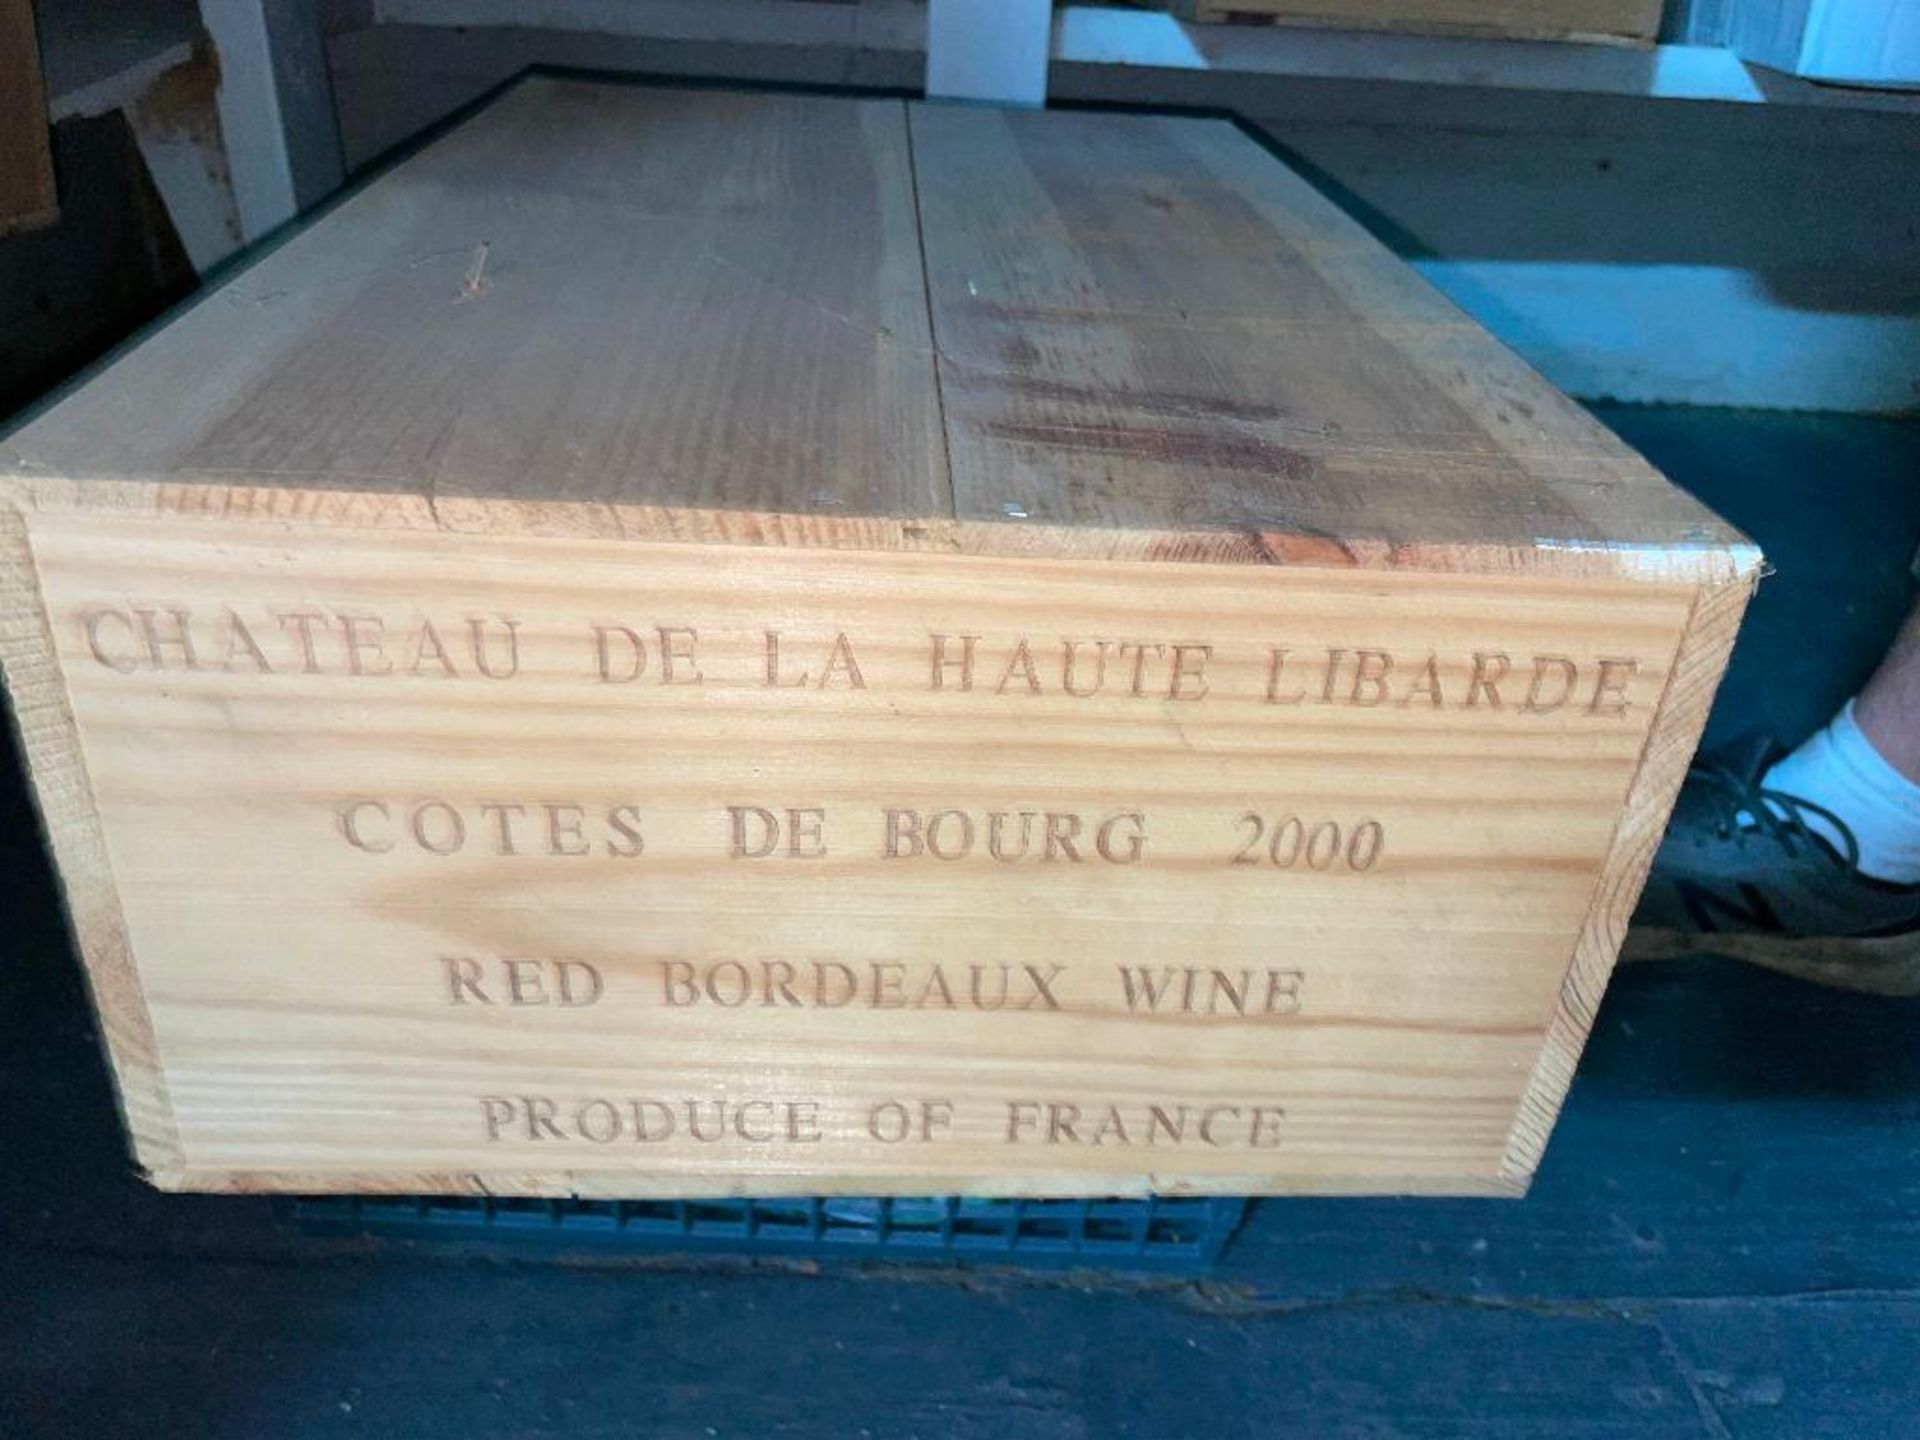 DESCRIPTION: (12) 750 ML BOTTLES OF CHATEAU DE LA HAUTE LIBARDE COTE DE BOURG 2000 ADDITIONAL INFORM - Image 2 of 4